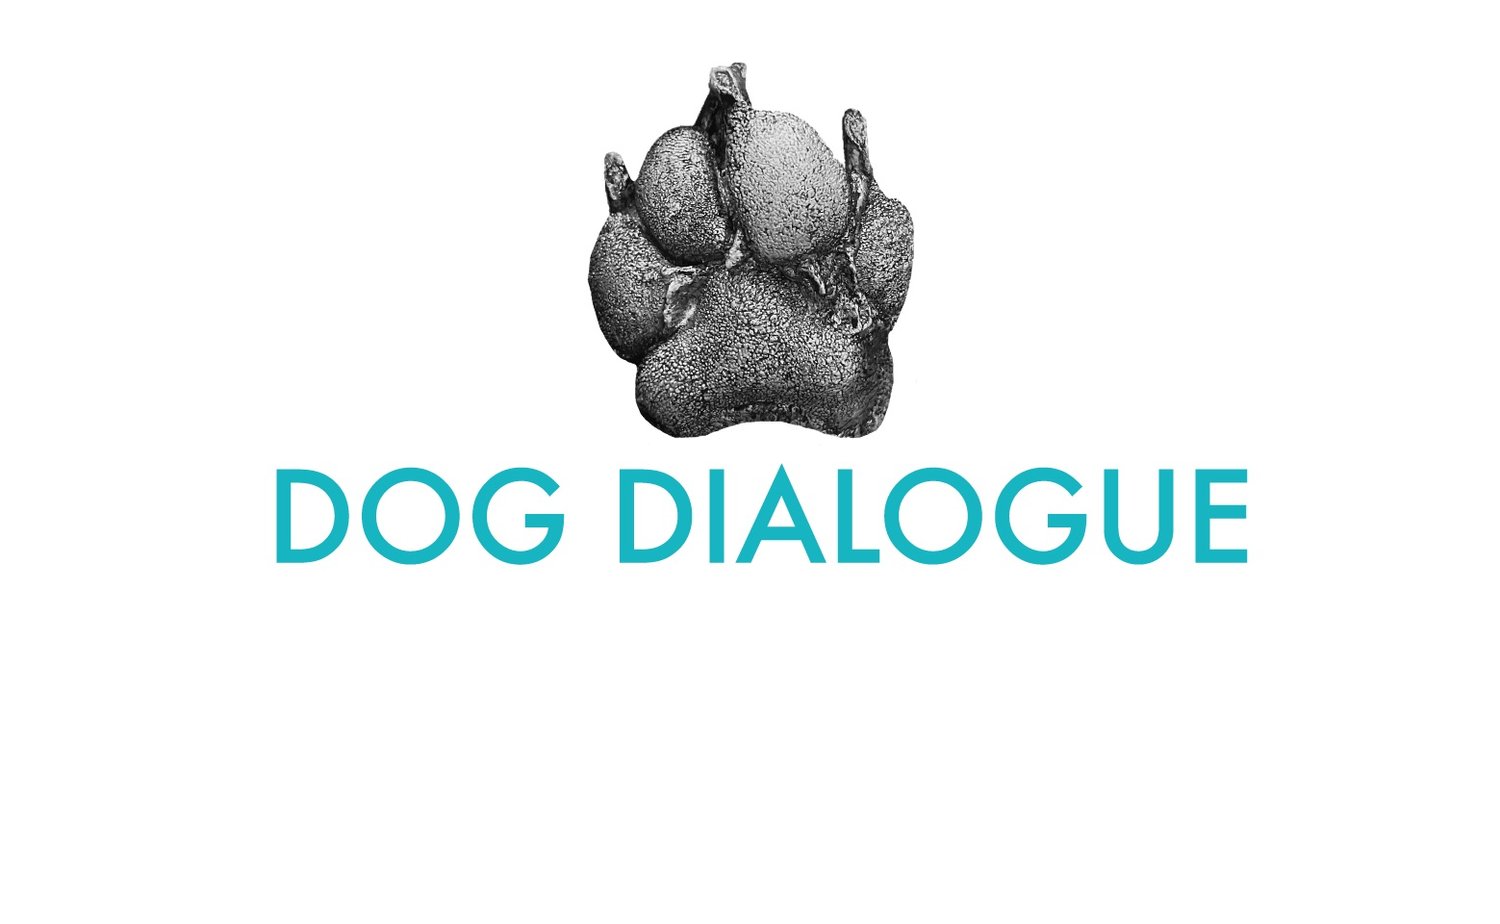 Dog Dialogue